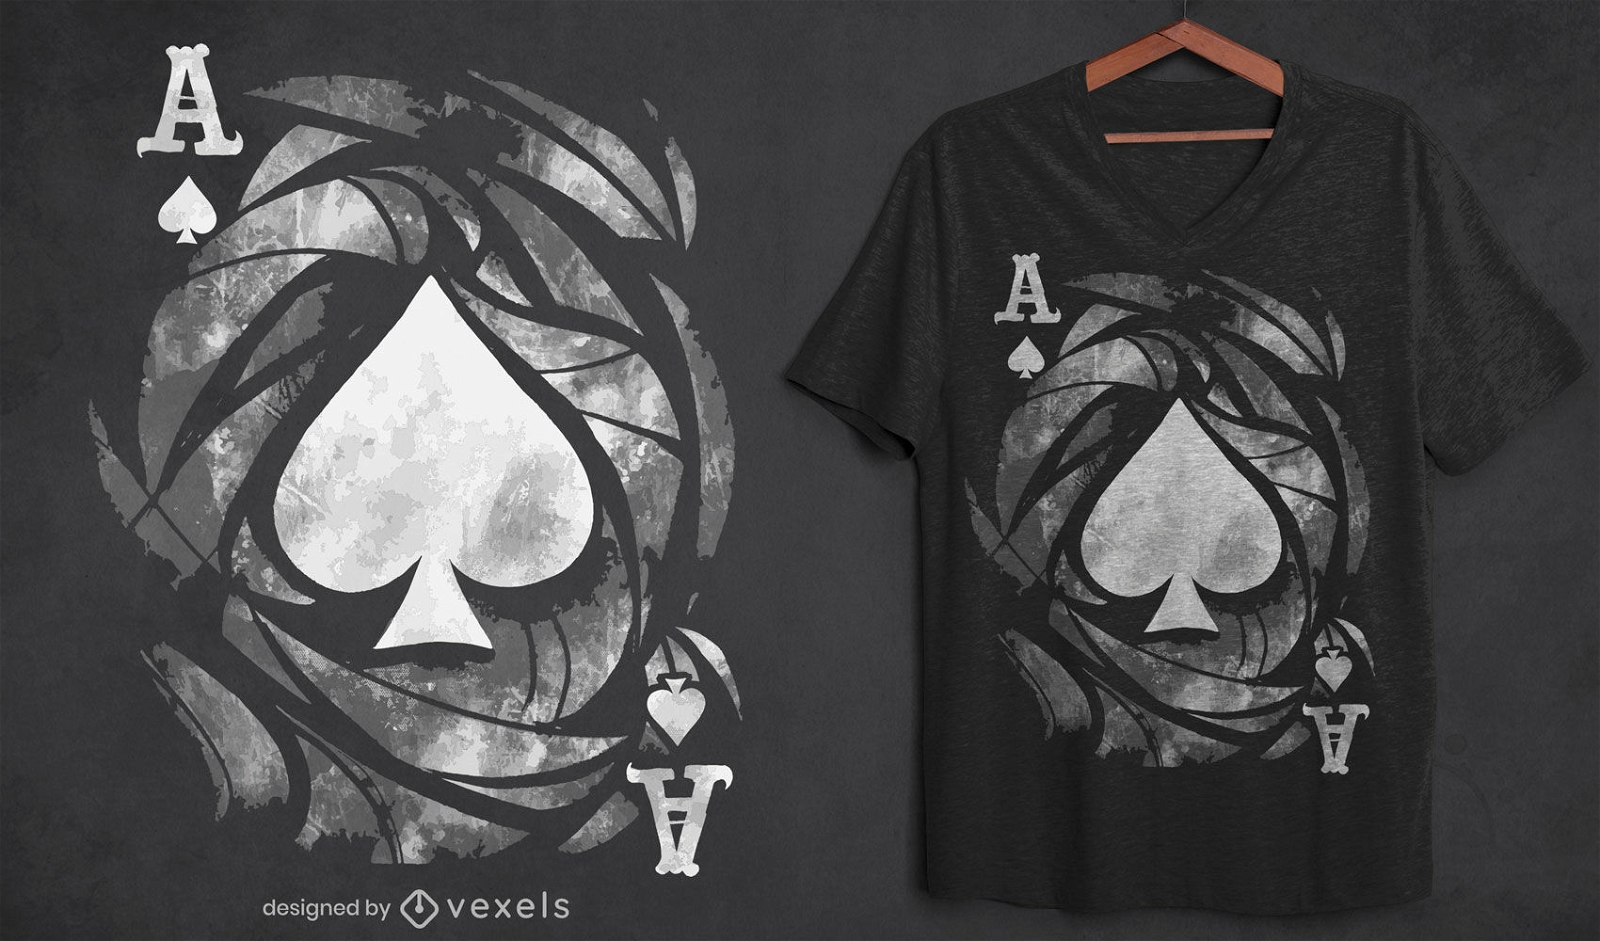 Ace of spades grunge t-shirt design